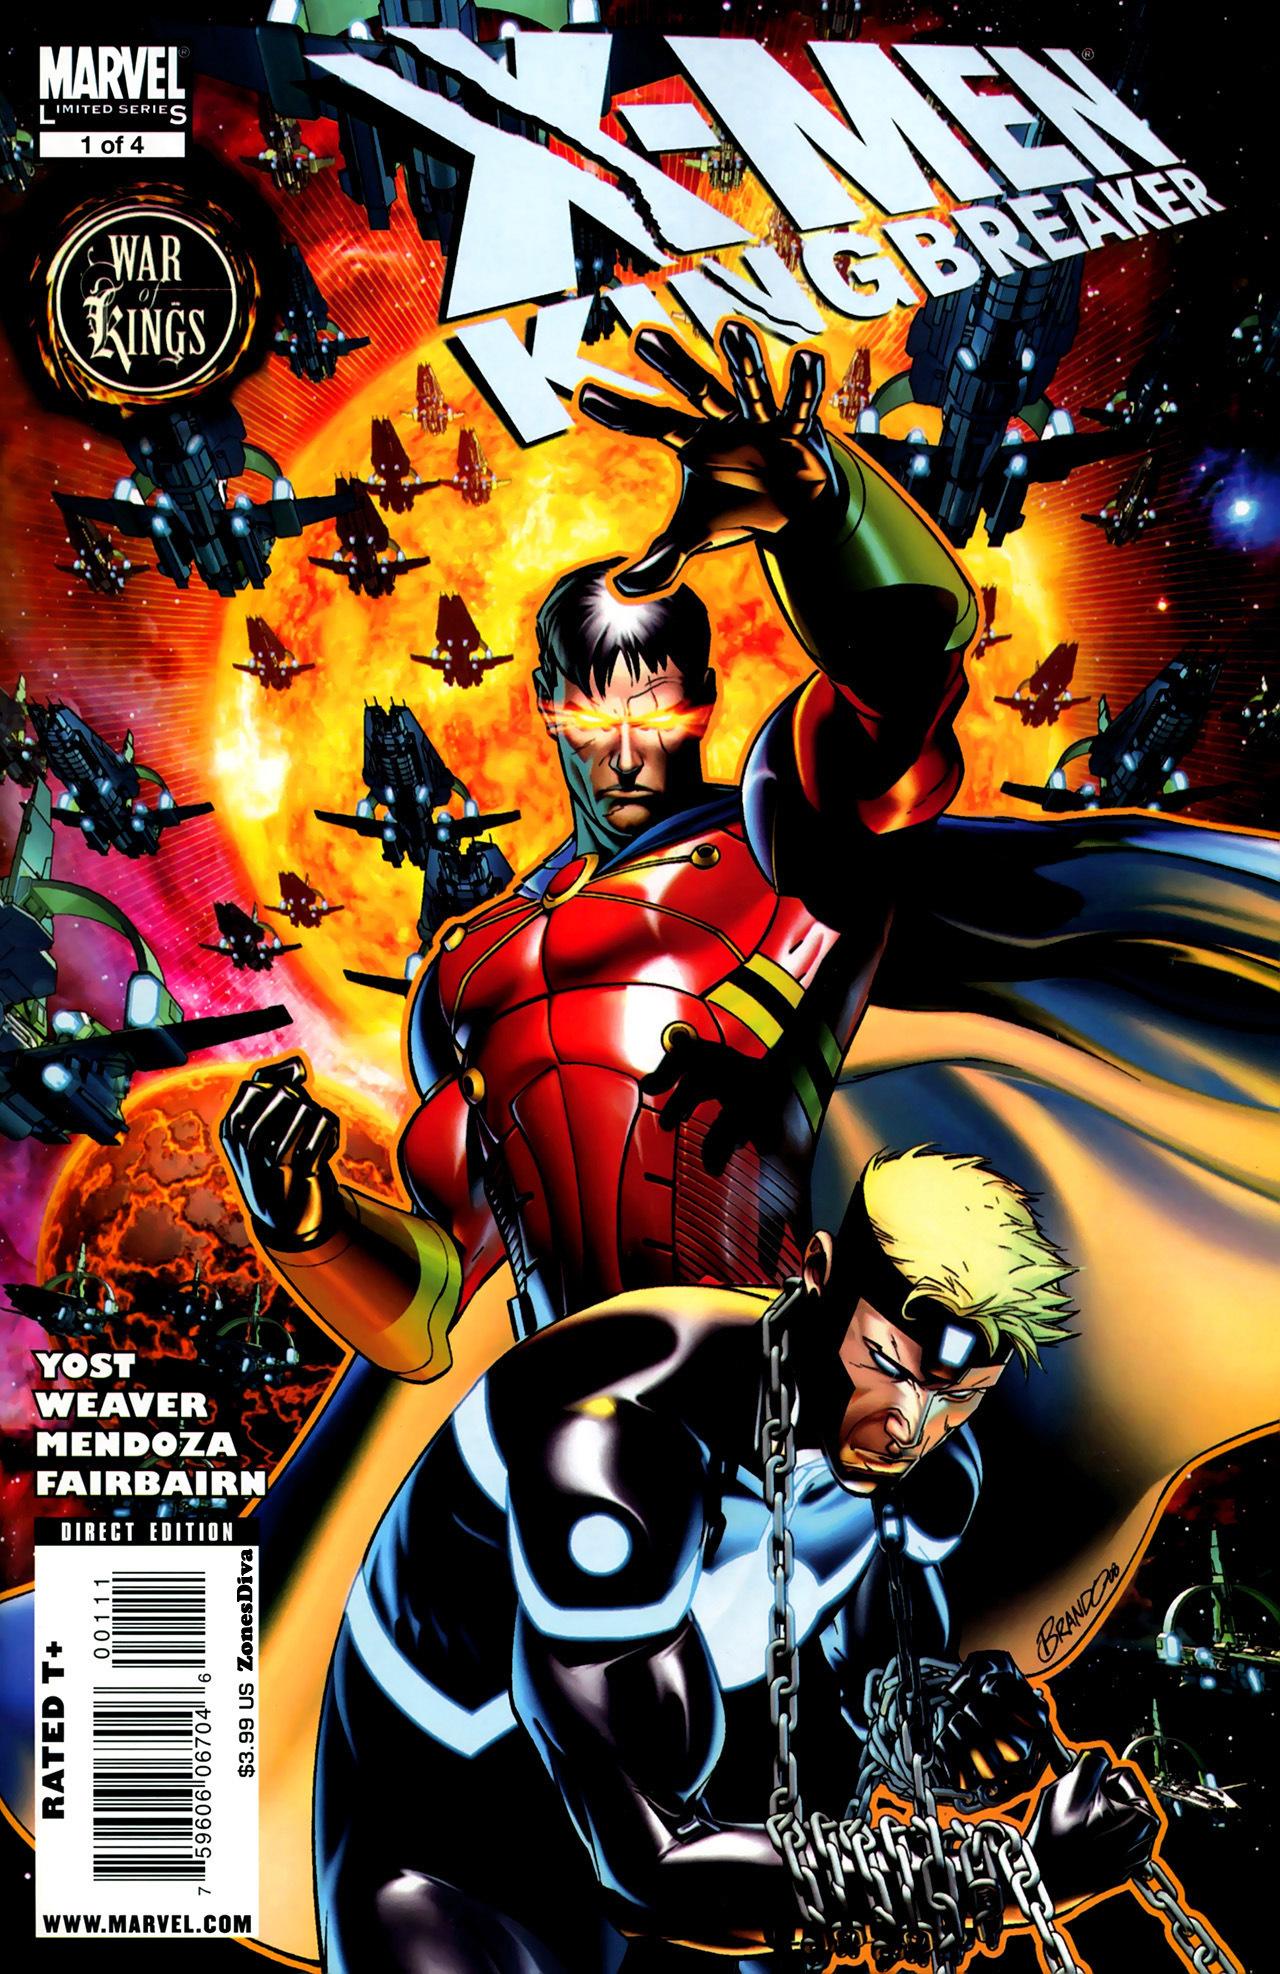 X-Men: Kingbreaker Vol. 1 #1